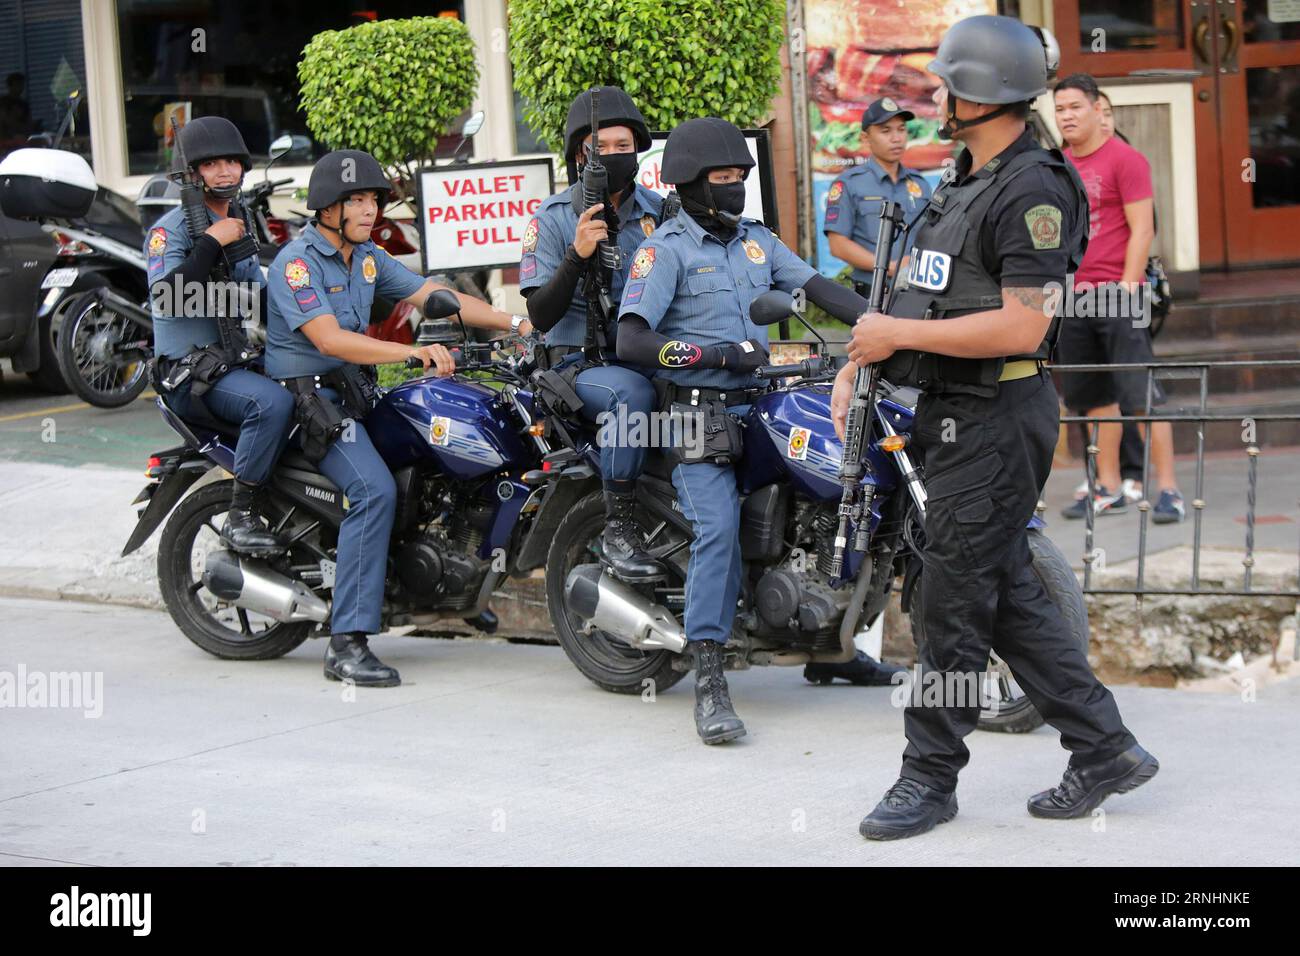 (161201) -- QUEZON CITY, 1. Dezember 2016 -- Polizisten patrouillieren auf einer Straße in Quezon City, Philippinen, 1. Dezember 2016. Die philippinische Polizei hat zwei Männer verhaftet, die am Montag vor der Botschaft der Vereinigten Staaten in Manila ein improvisiertes Sprenggerät (IED) platziert haben sollen, sagte der Polizeichef des Landes am Donnerstag. Die Philippinen haben die Sicherheit der Terroralarmierungsstufe 3 in der Hauptstadt nach den vereitelten Bombenangriffen vom Montag erhöht. ) (Sxk) PHILIPPINEN-QUEZON-SECURITY-PATROL ROUELLExUMALI PUBLICATIONxNOTxINxCHN Quezon City DEC 1 2016 Polizisten PATROUILLE A Street in Quezon City Philippinen DEC 1 Stockfoto